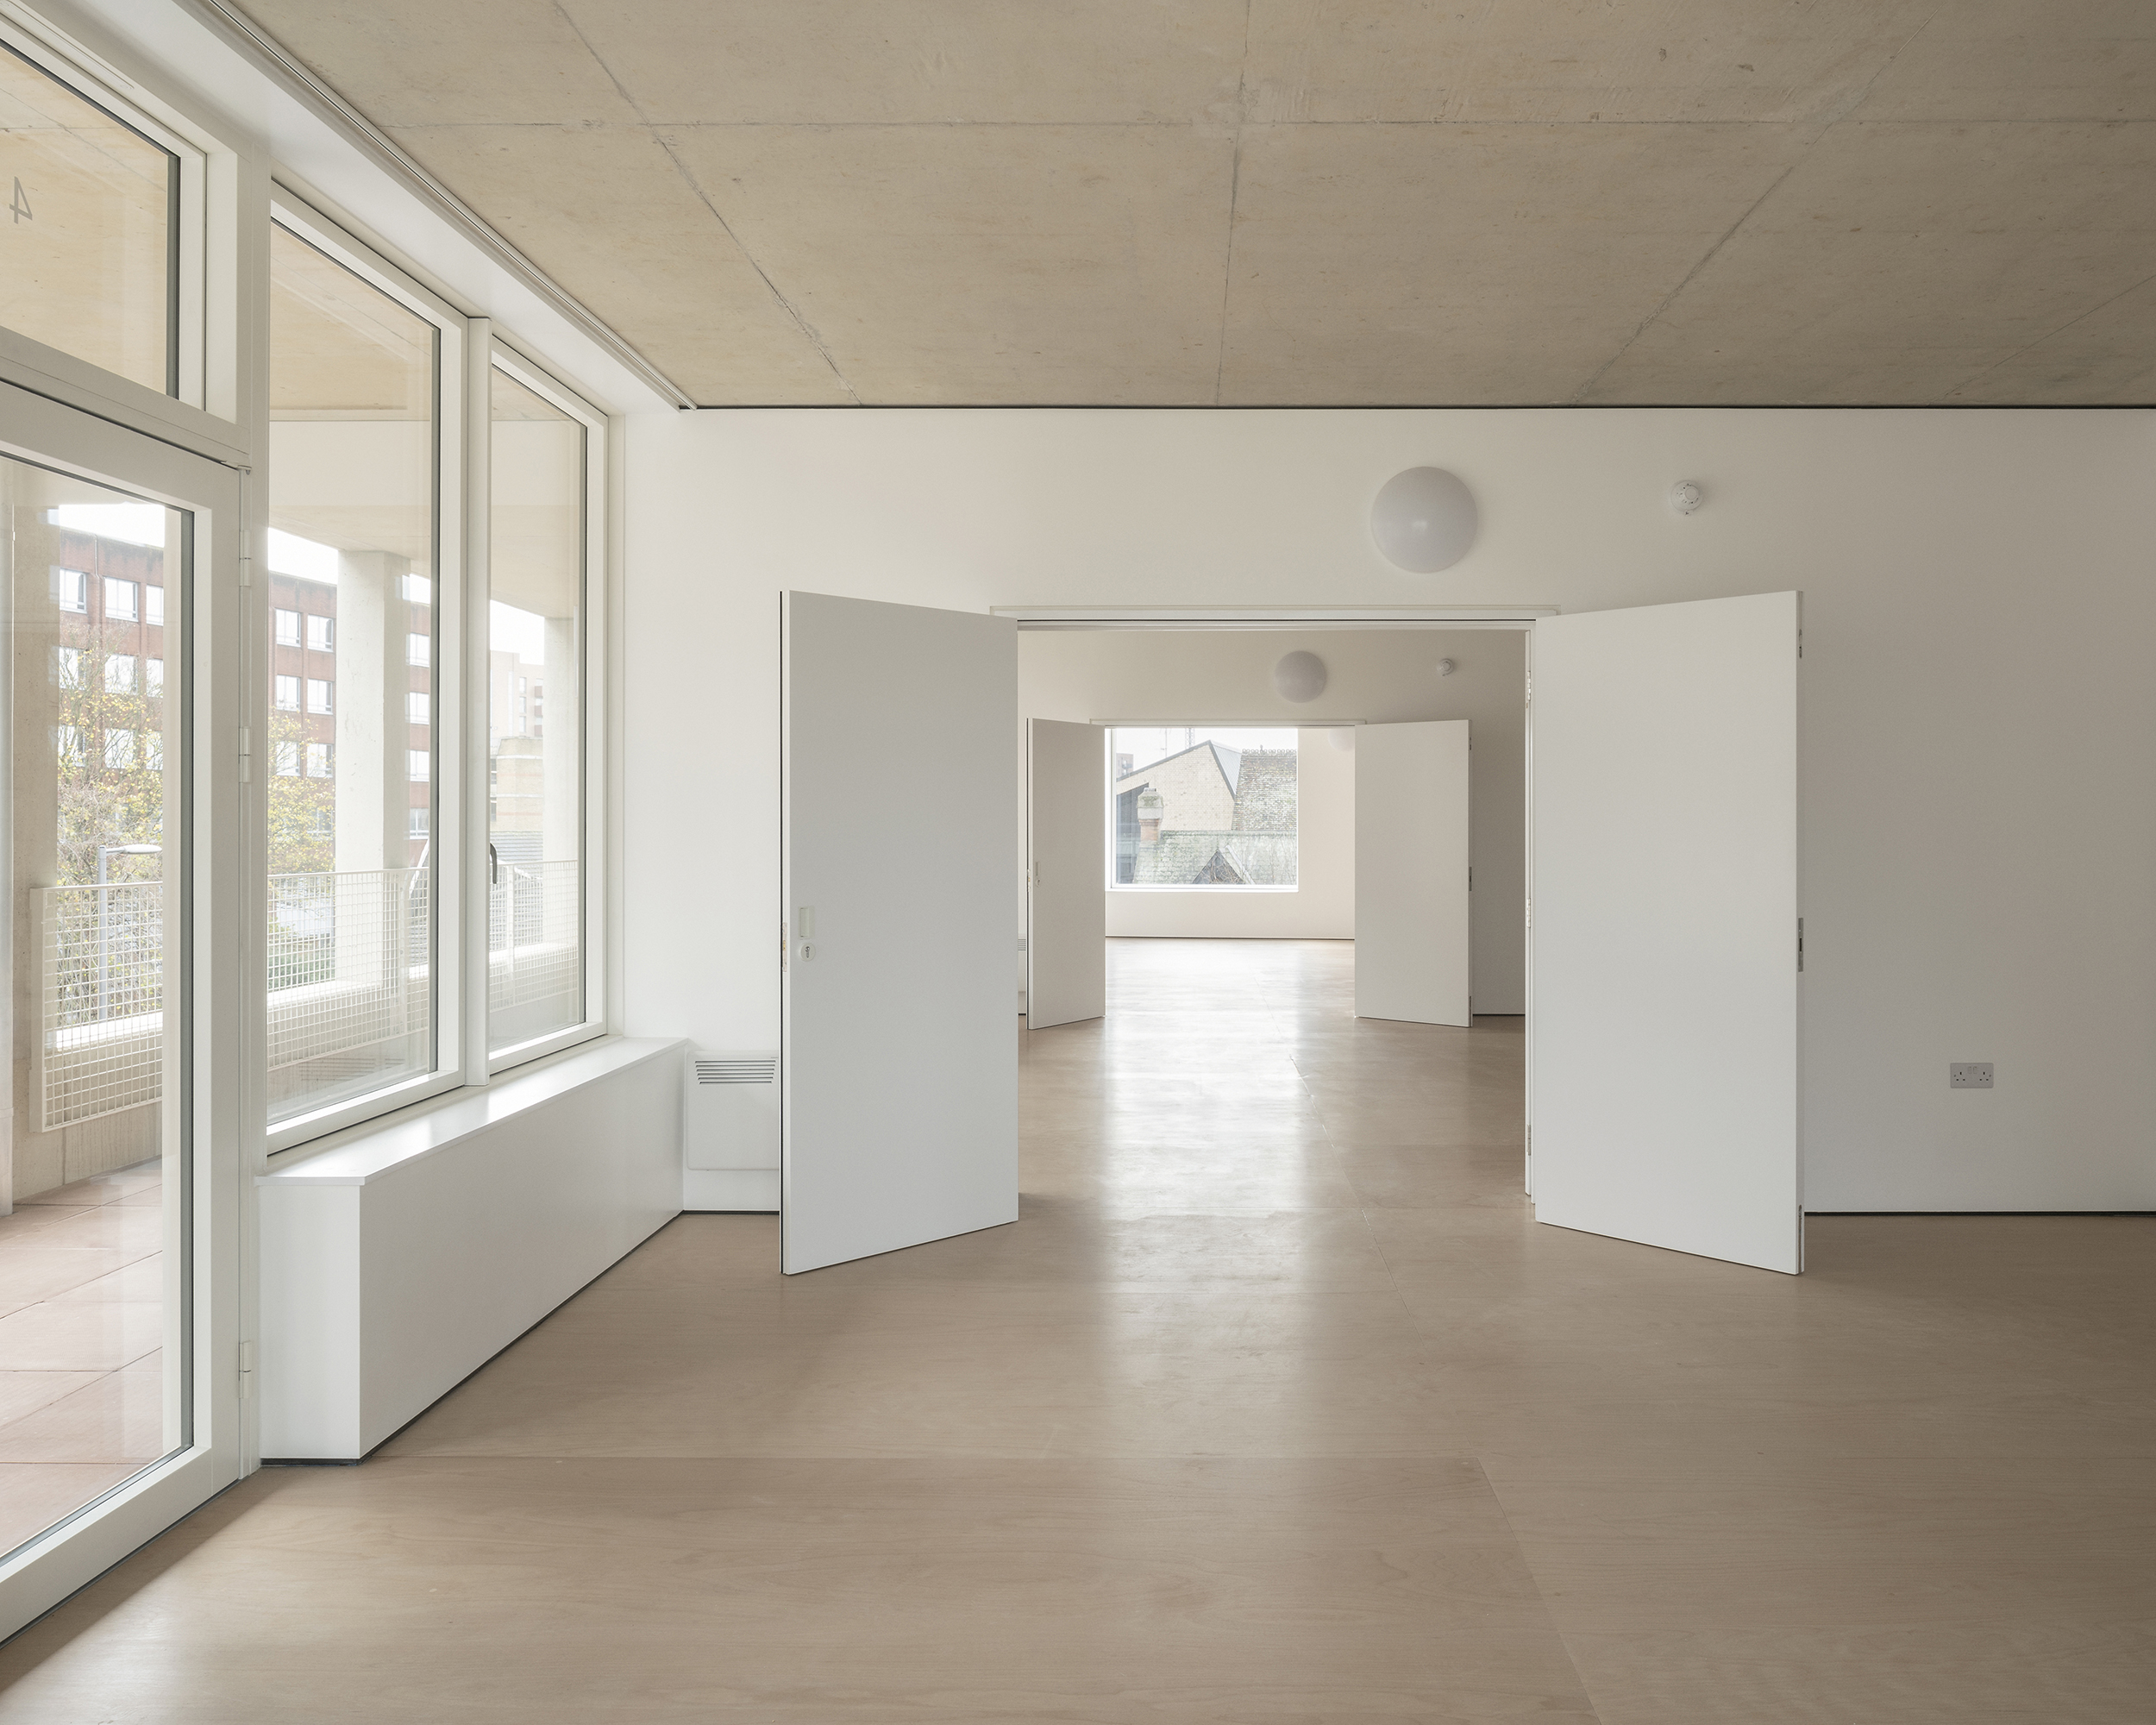 Flexible co-housing floor with double doors in party walls